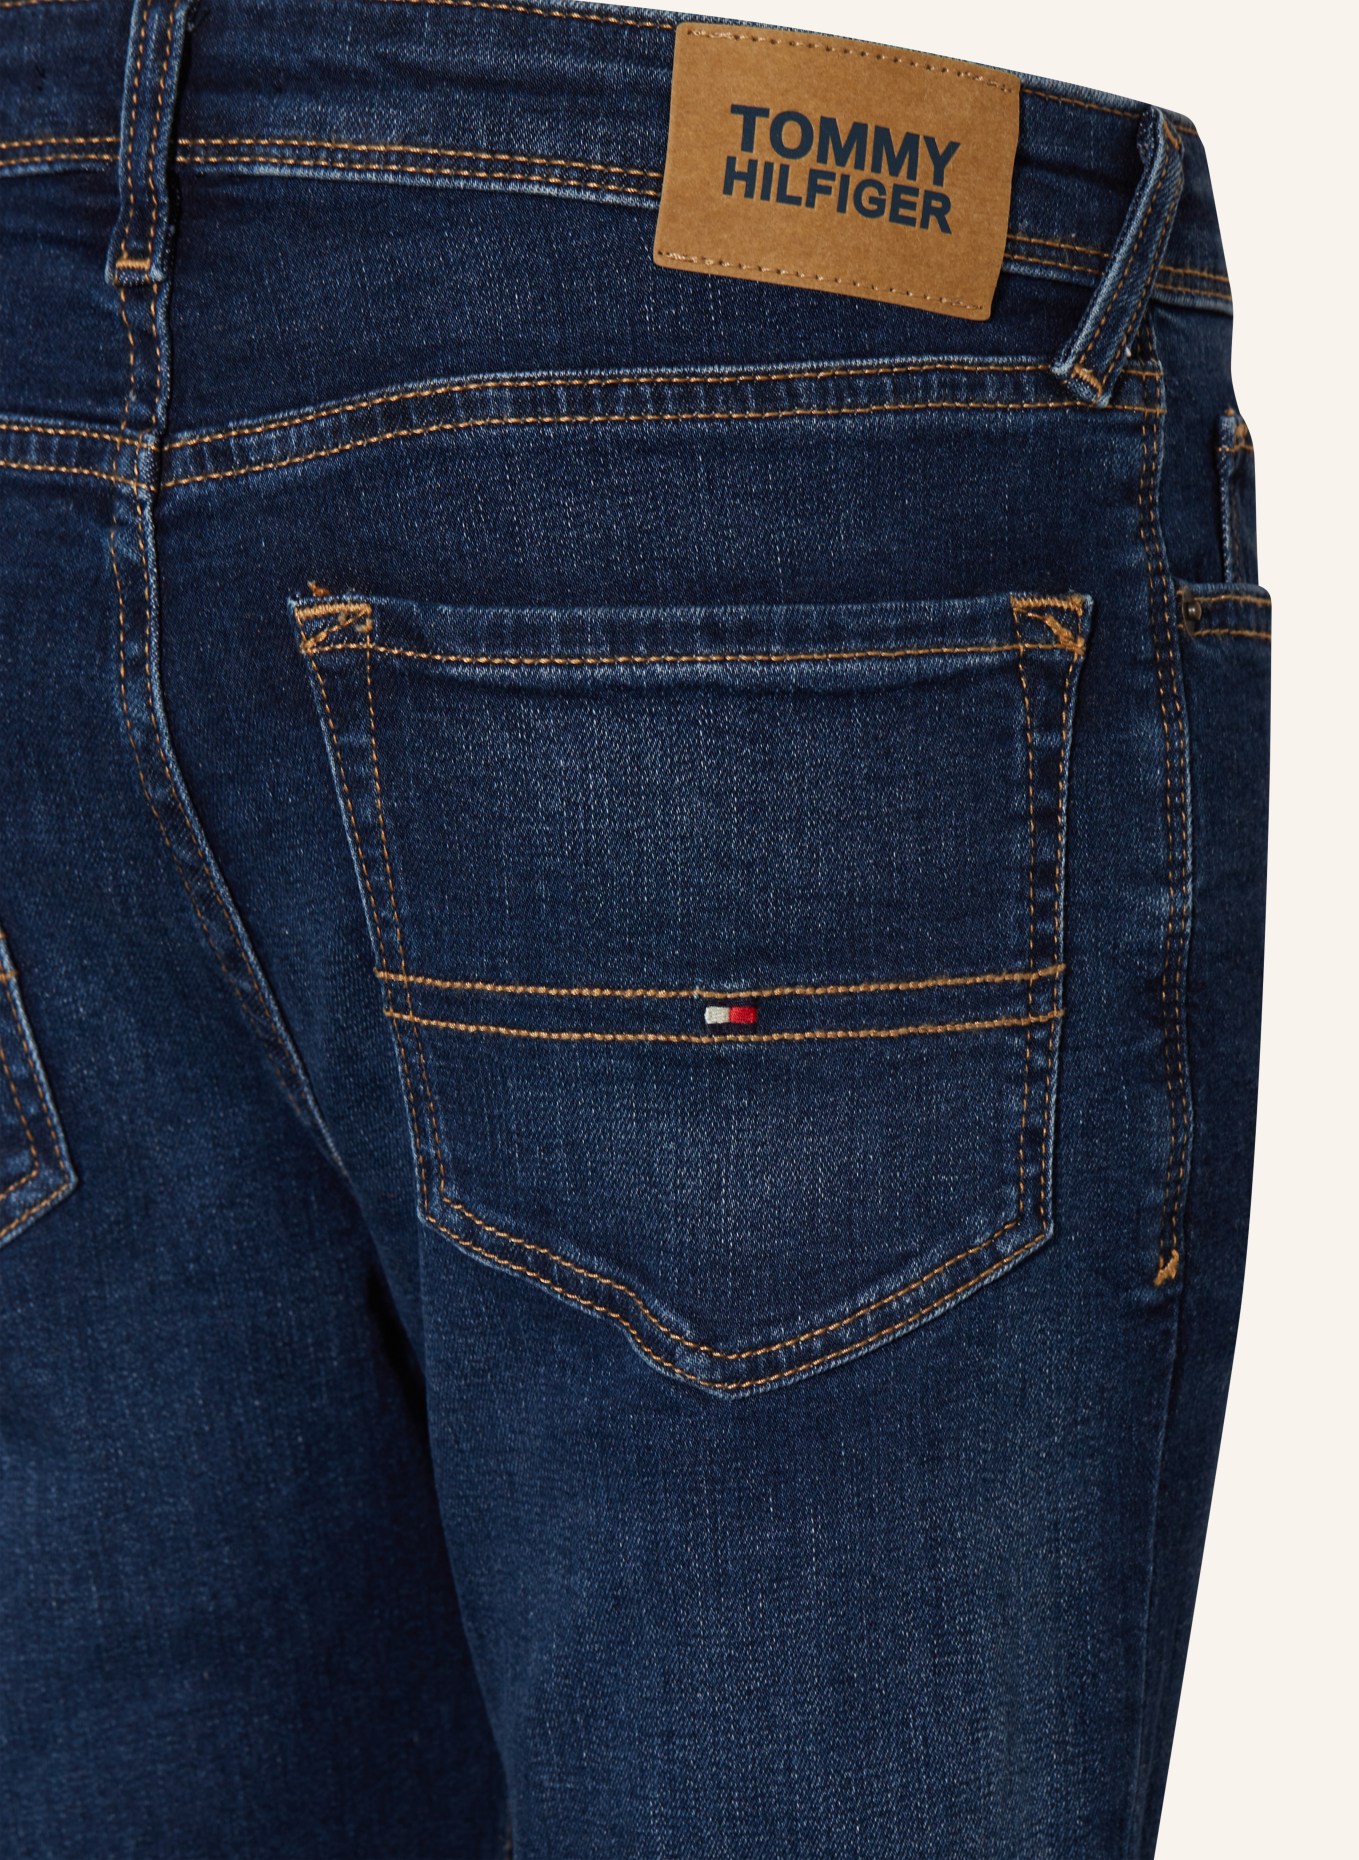 TOMMY HILFIGER Jeans Slim Fit, Farbe: 1BN Darkused (Bild 3)